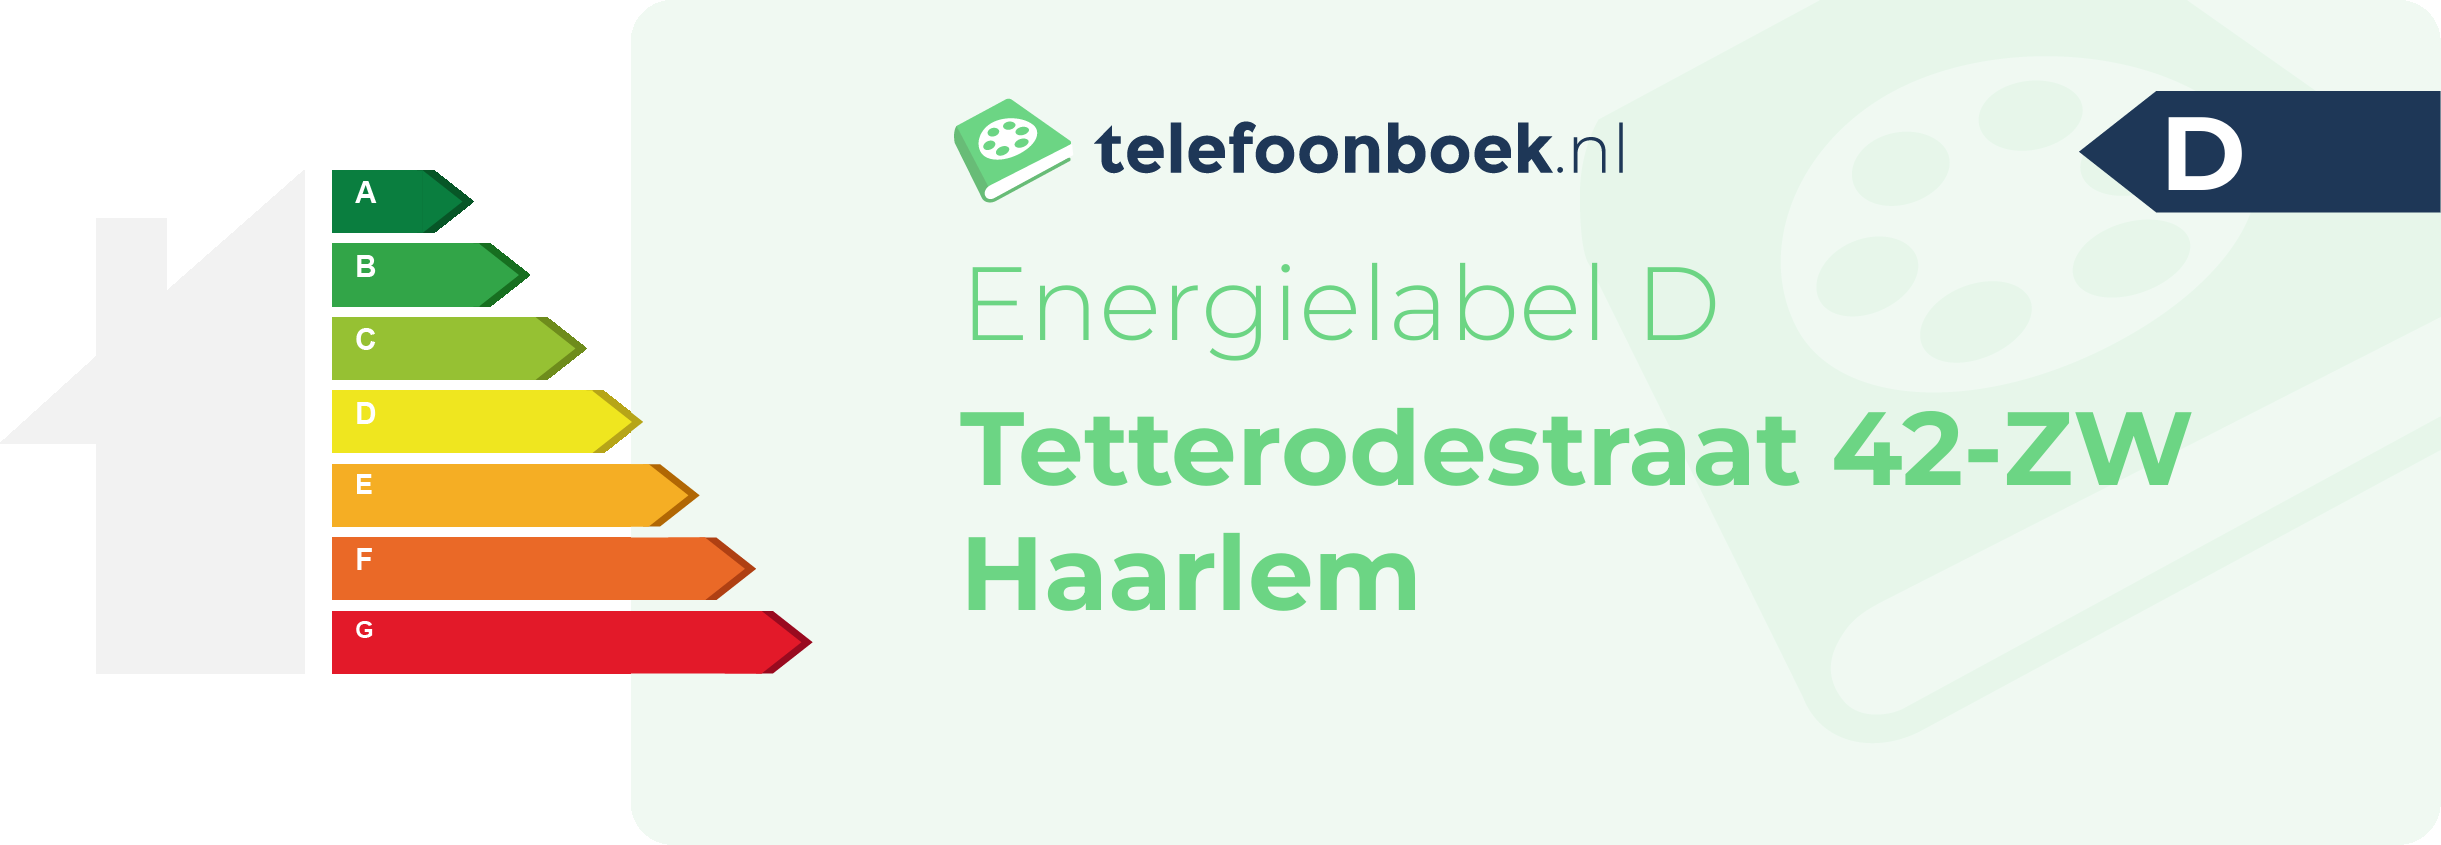 Energielabel Tetterodestraat 42-ZW Haarlem